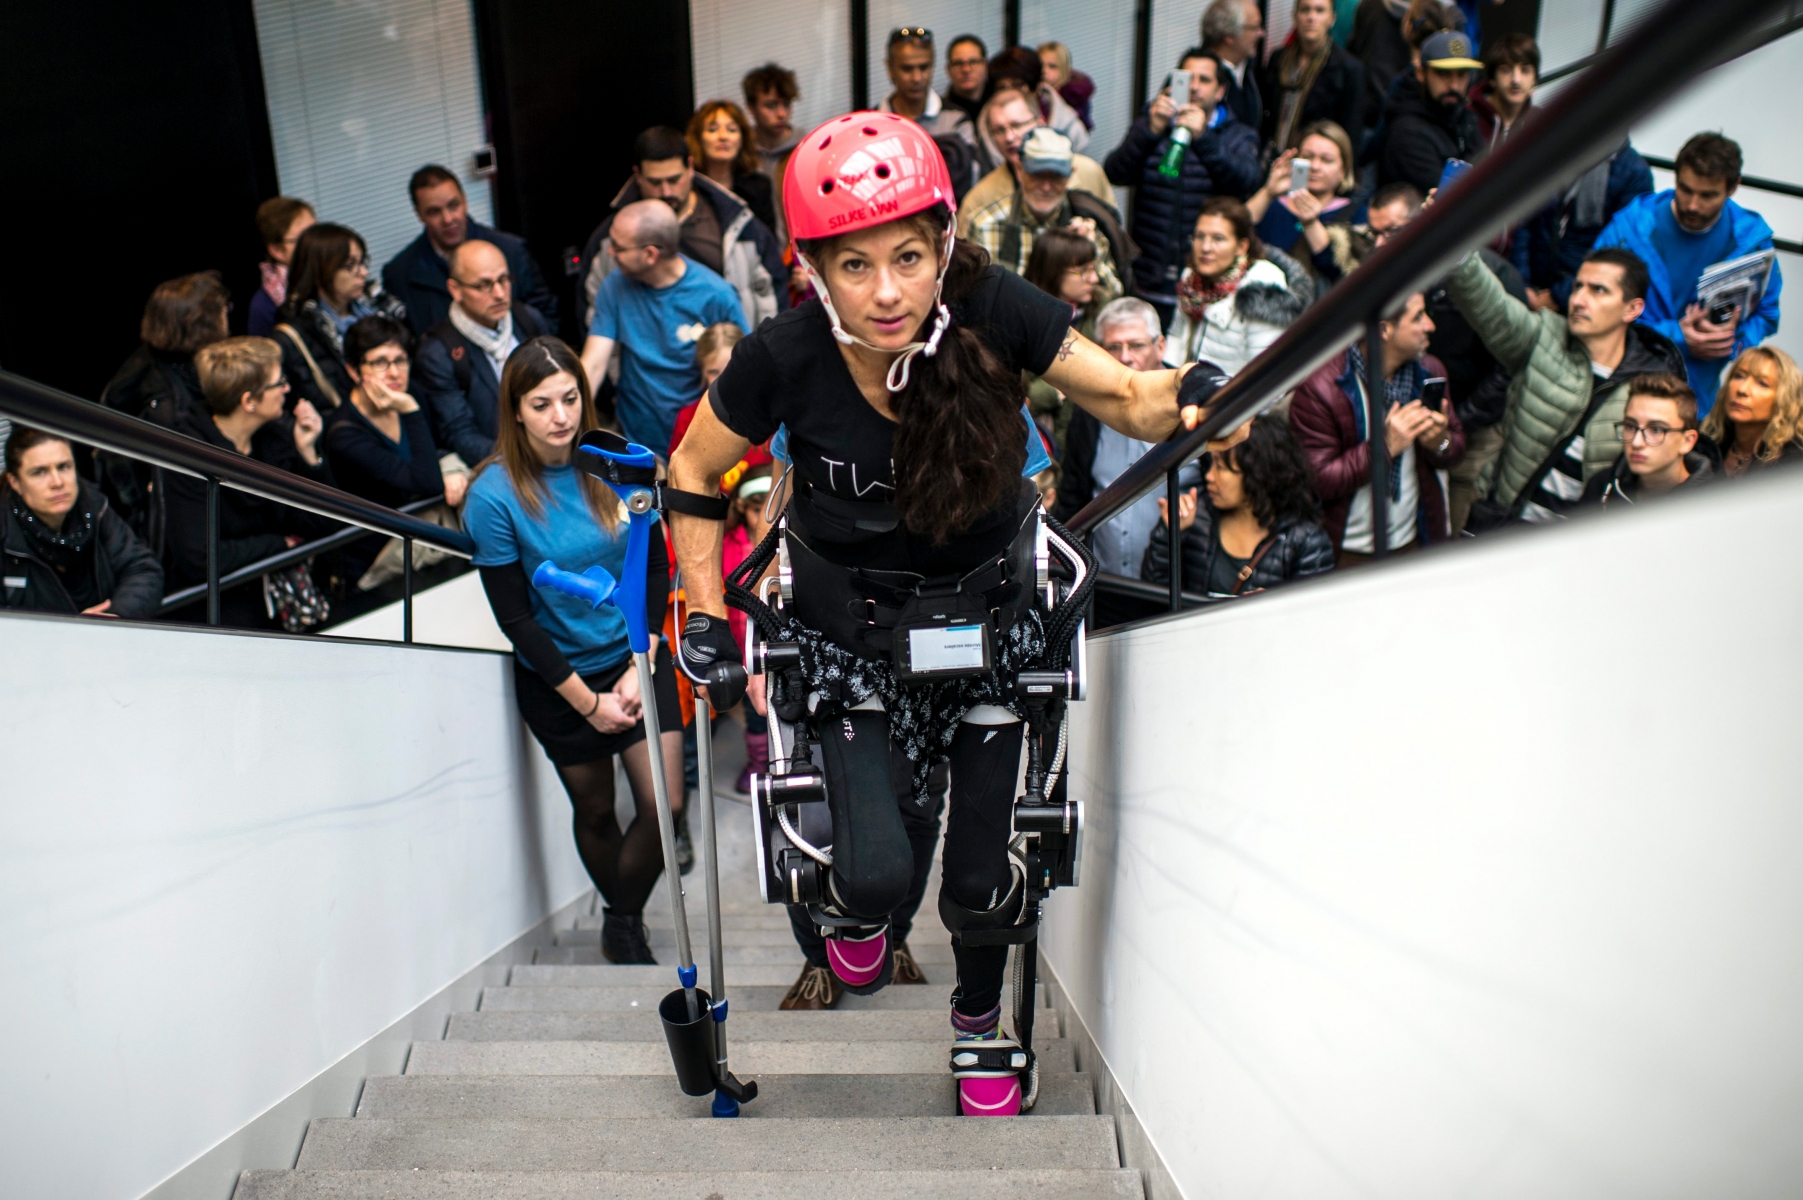 Ici l'athlete de Handbike paraplegique Silke Pan sur l'exosquelette realise par l'EPFL lors des portes ouvertes de l'EPFL ce dimanche 6 novembre 2016, a Lausanne. Les portes ouvertes de l'EPFL deroulent le week-end du 5 au 6 novembre 2016 a Lausanne. Durant cette periode, de nombreuses activitees sont proposee au public. Des ateliers, visites, demonstrations des conferences ainsi que des spectacles. Divers themes sont proposes en lien avec la science et la technologie.(KEYSTONE/Leo Duperrex) SCHWEIZ EPFL LAUSANNE